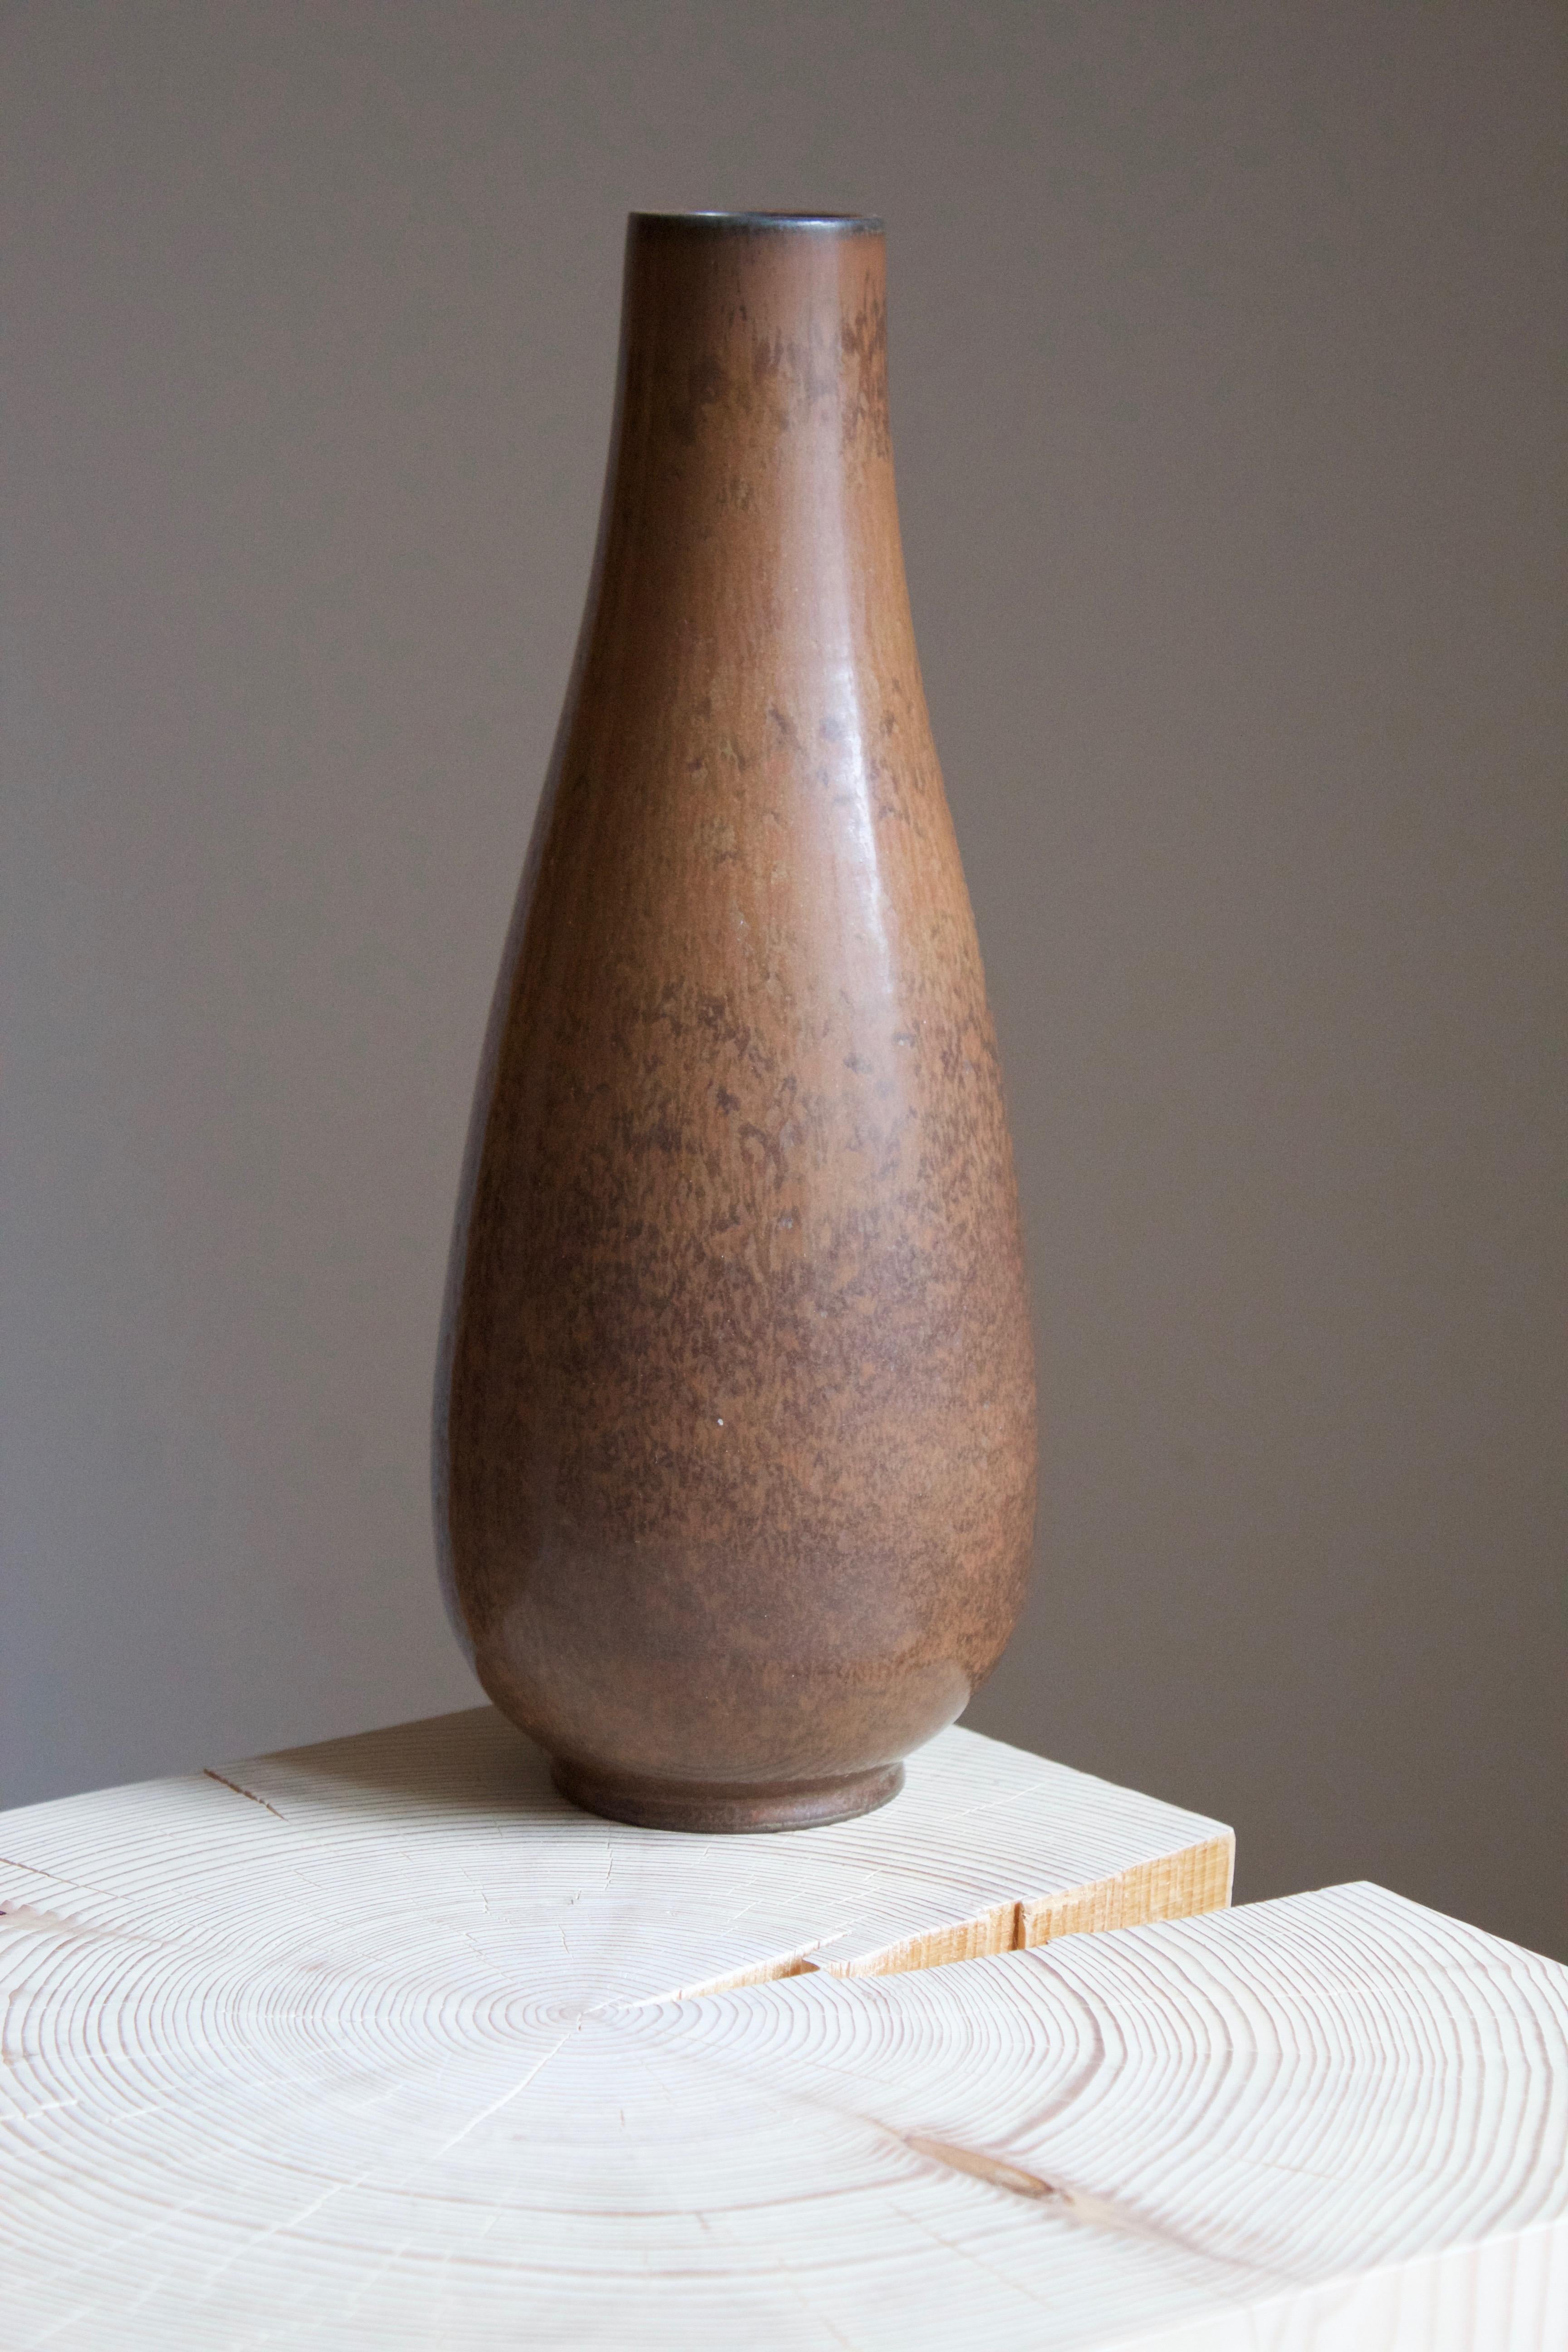 European Gunnar Nylund, Vase, Brown Glazed Stoneware, Rörstand, Sweden, 1950s